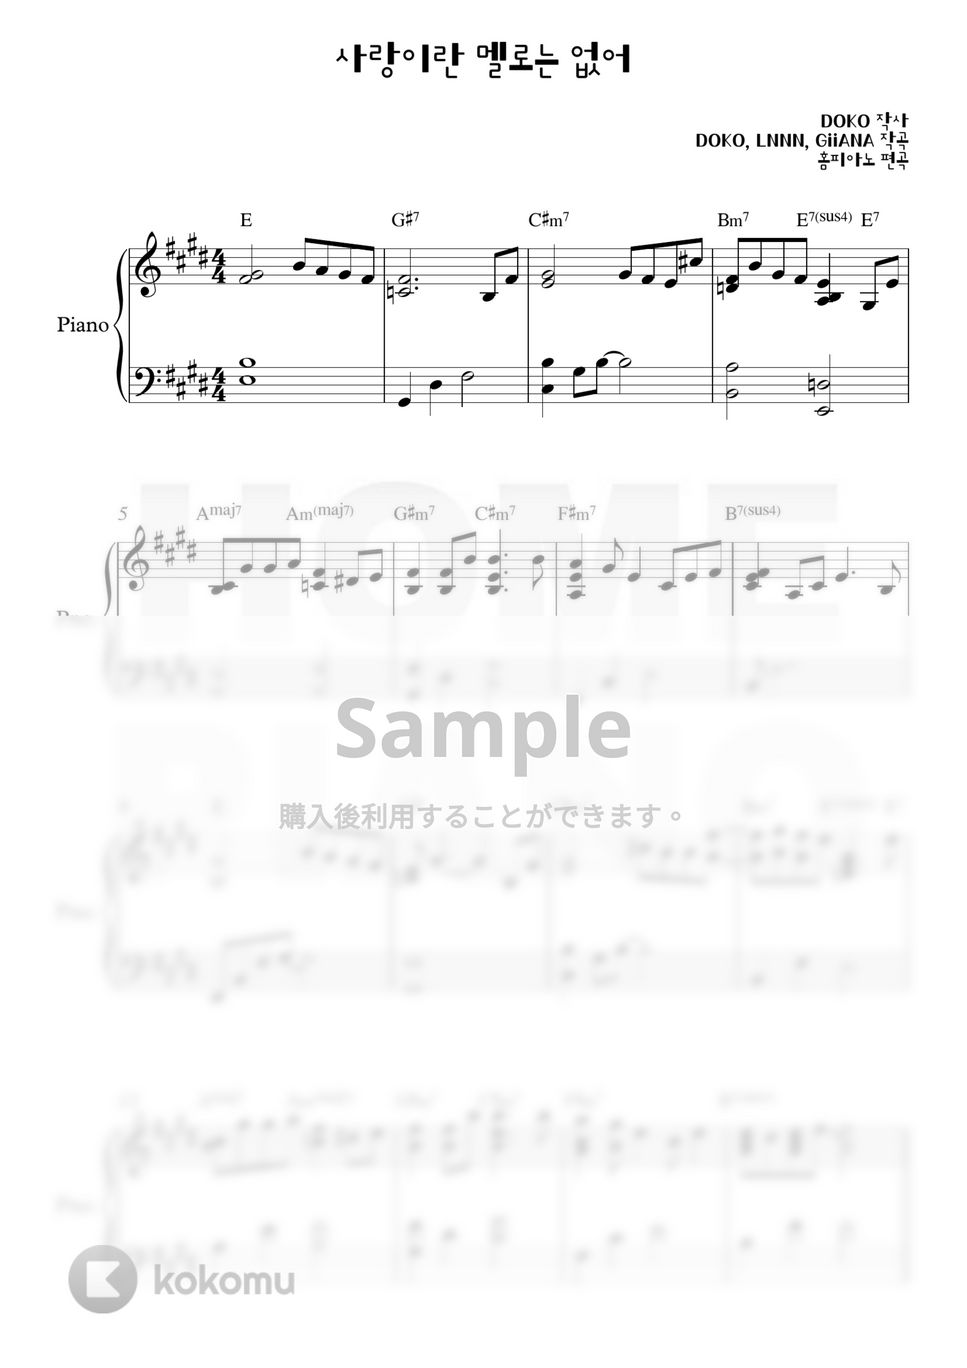 チョン・サングン - 愛というメロはない (中級) by HOME PIANO